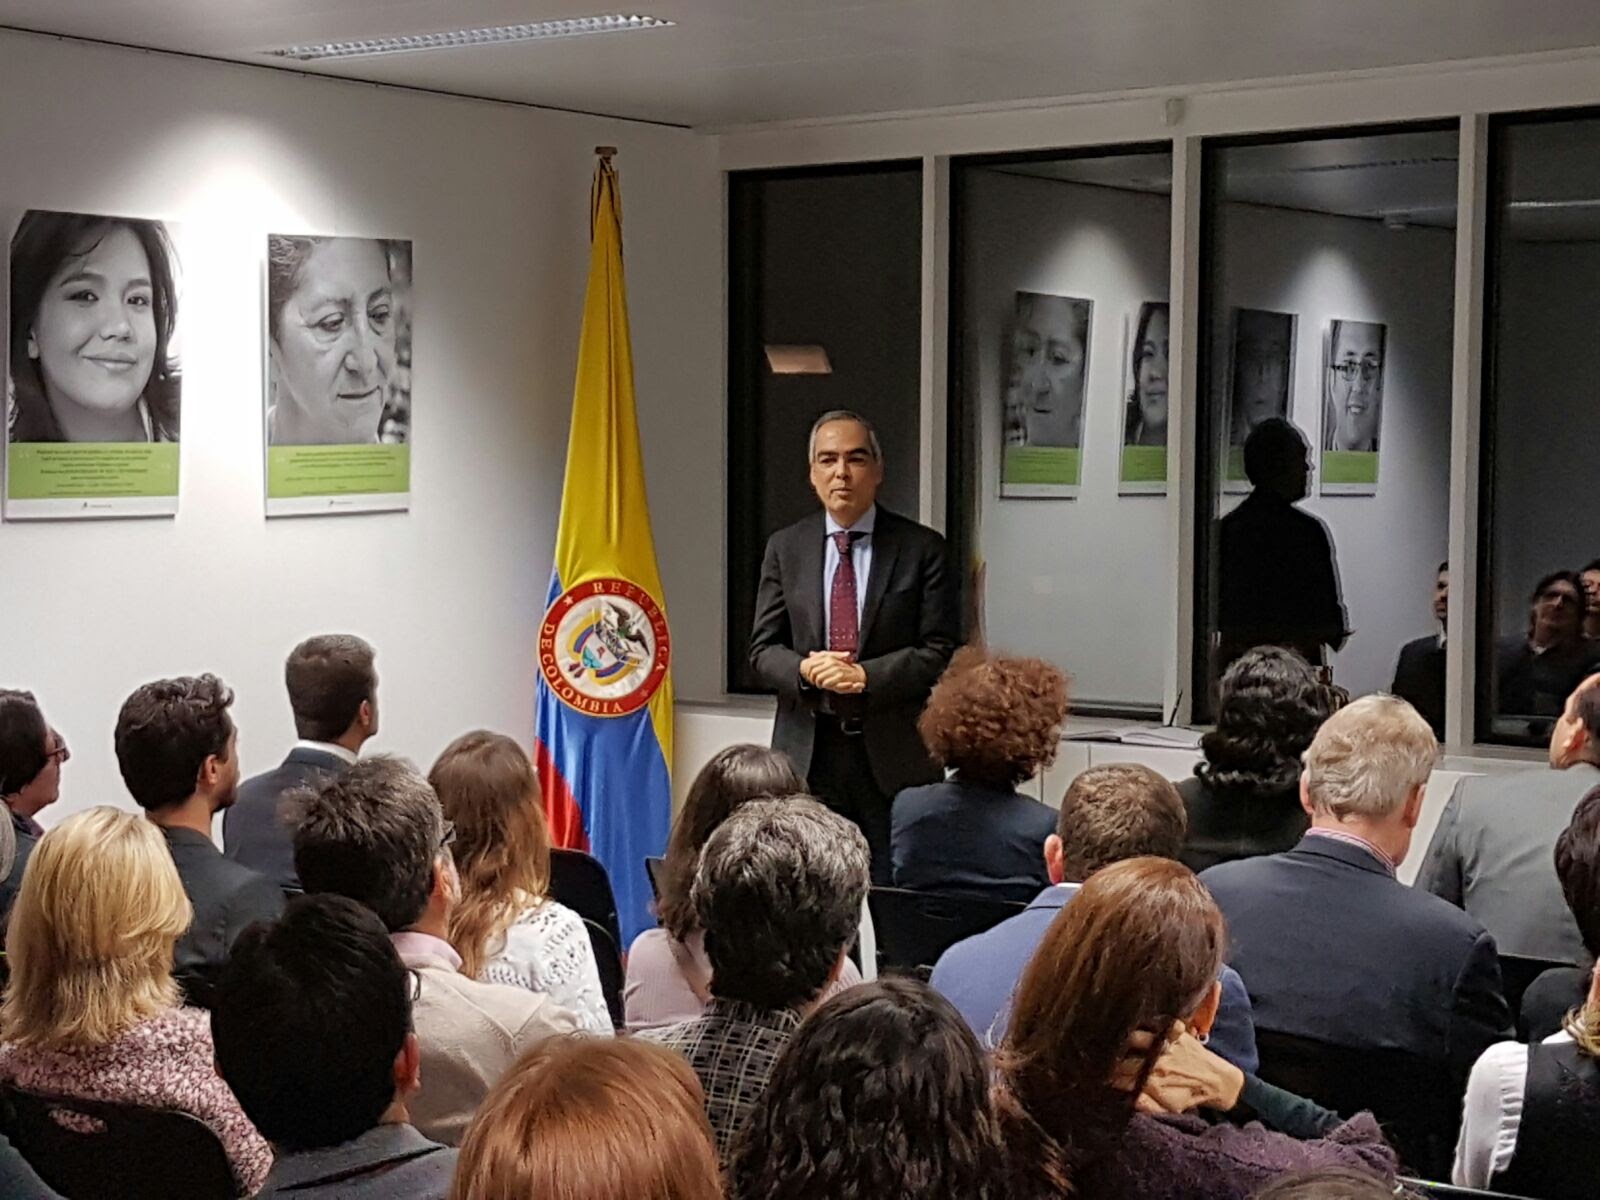 inauguración de la exposición fotográfica "Los Rostros del Perdón" en el Consulado de Colombia